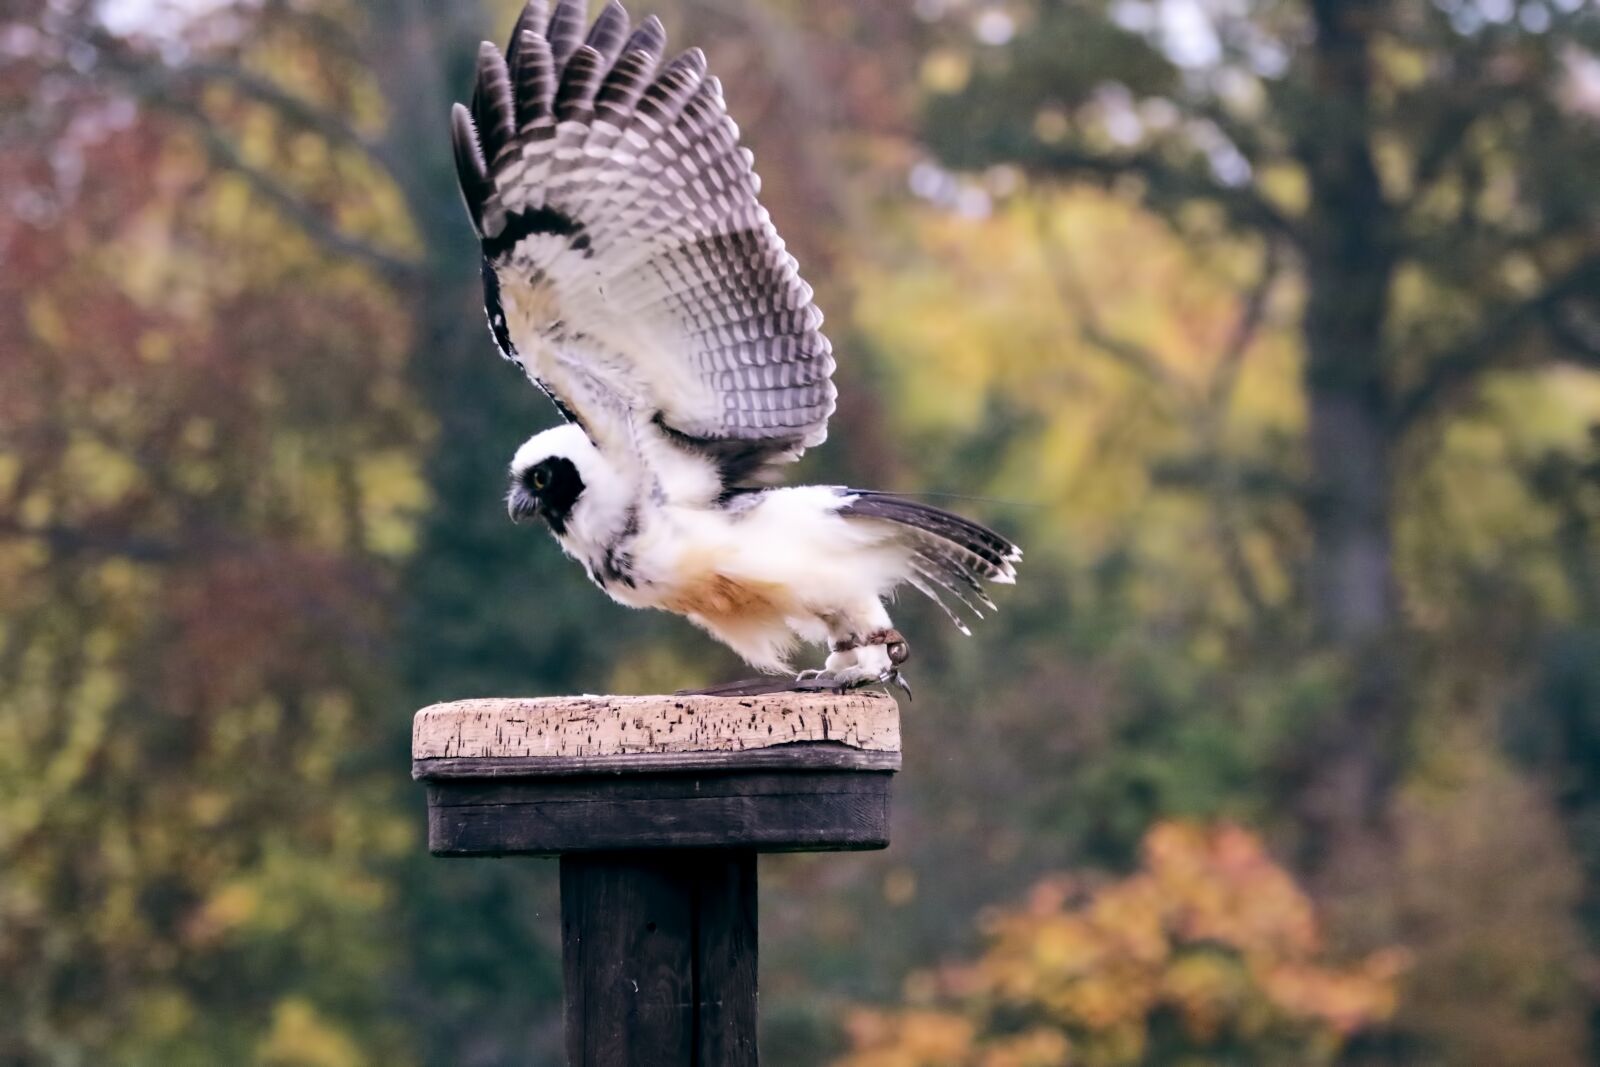 Canon EOS 7D Mark II sample photo. Spectacled owl, owl, bird photography